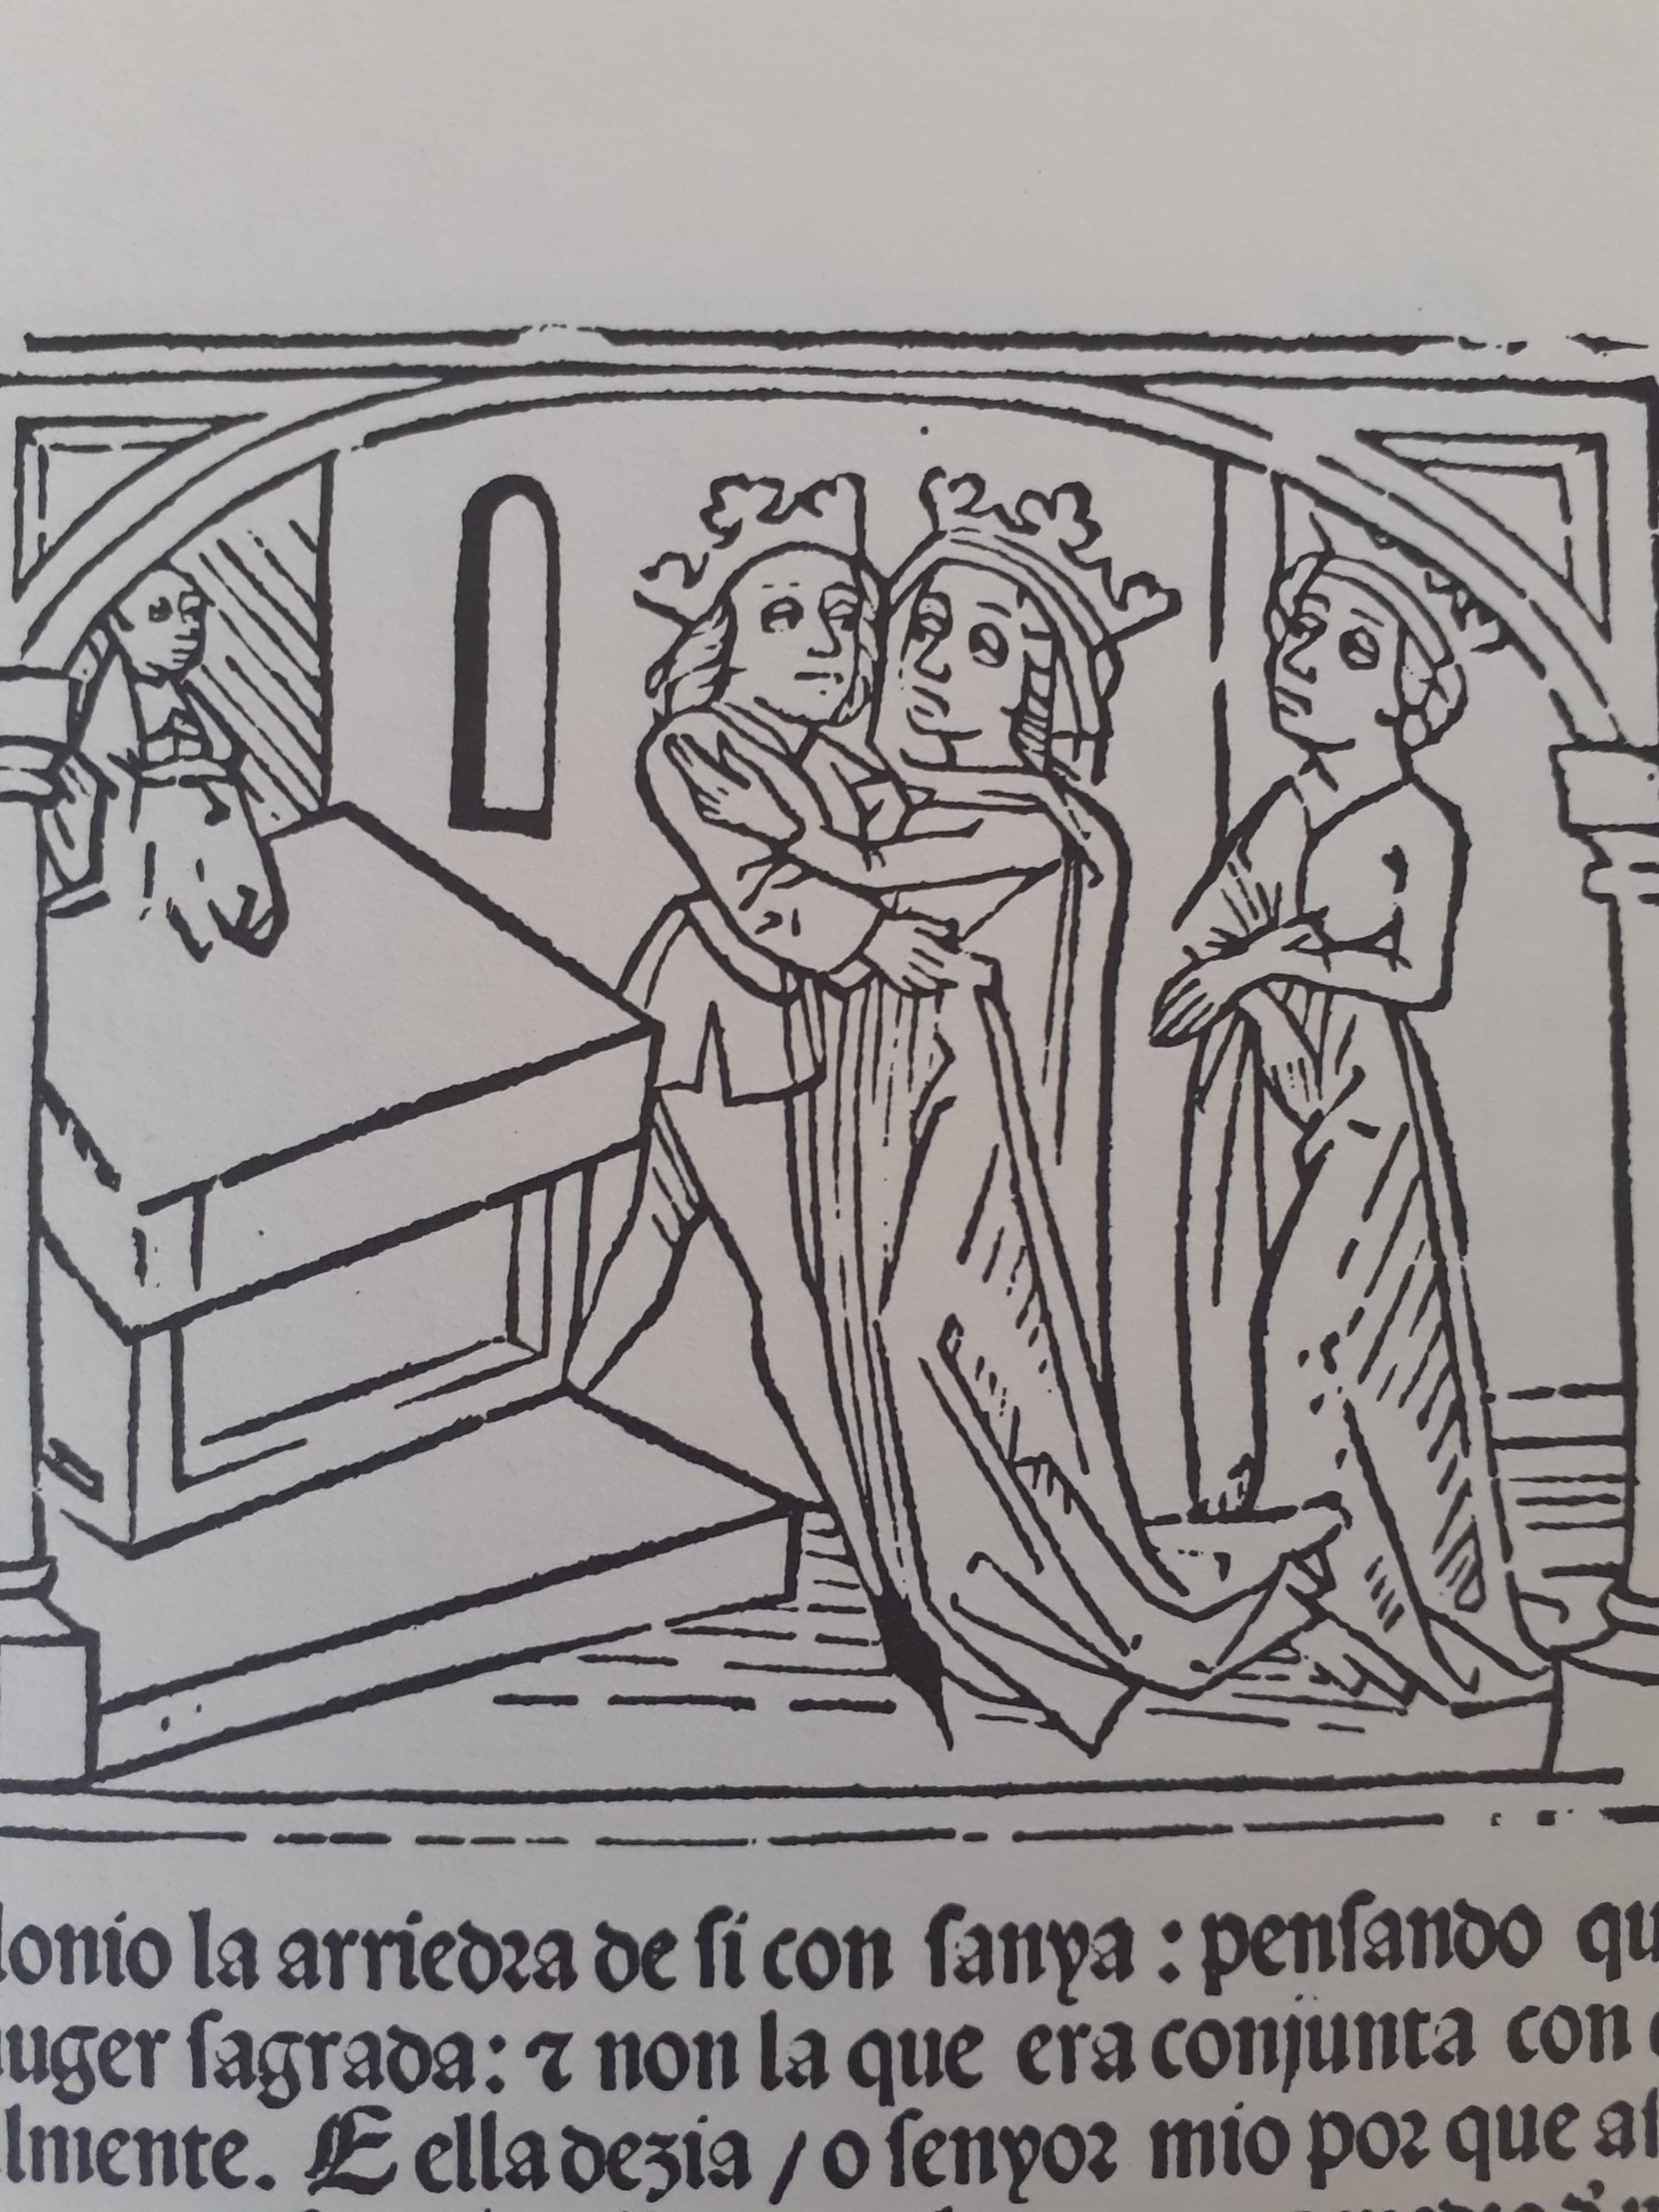 gravures de l'incunable, issu de la traduction de l'Historia latine, au XVe siècle